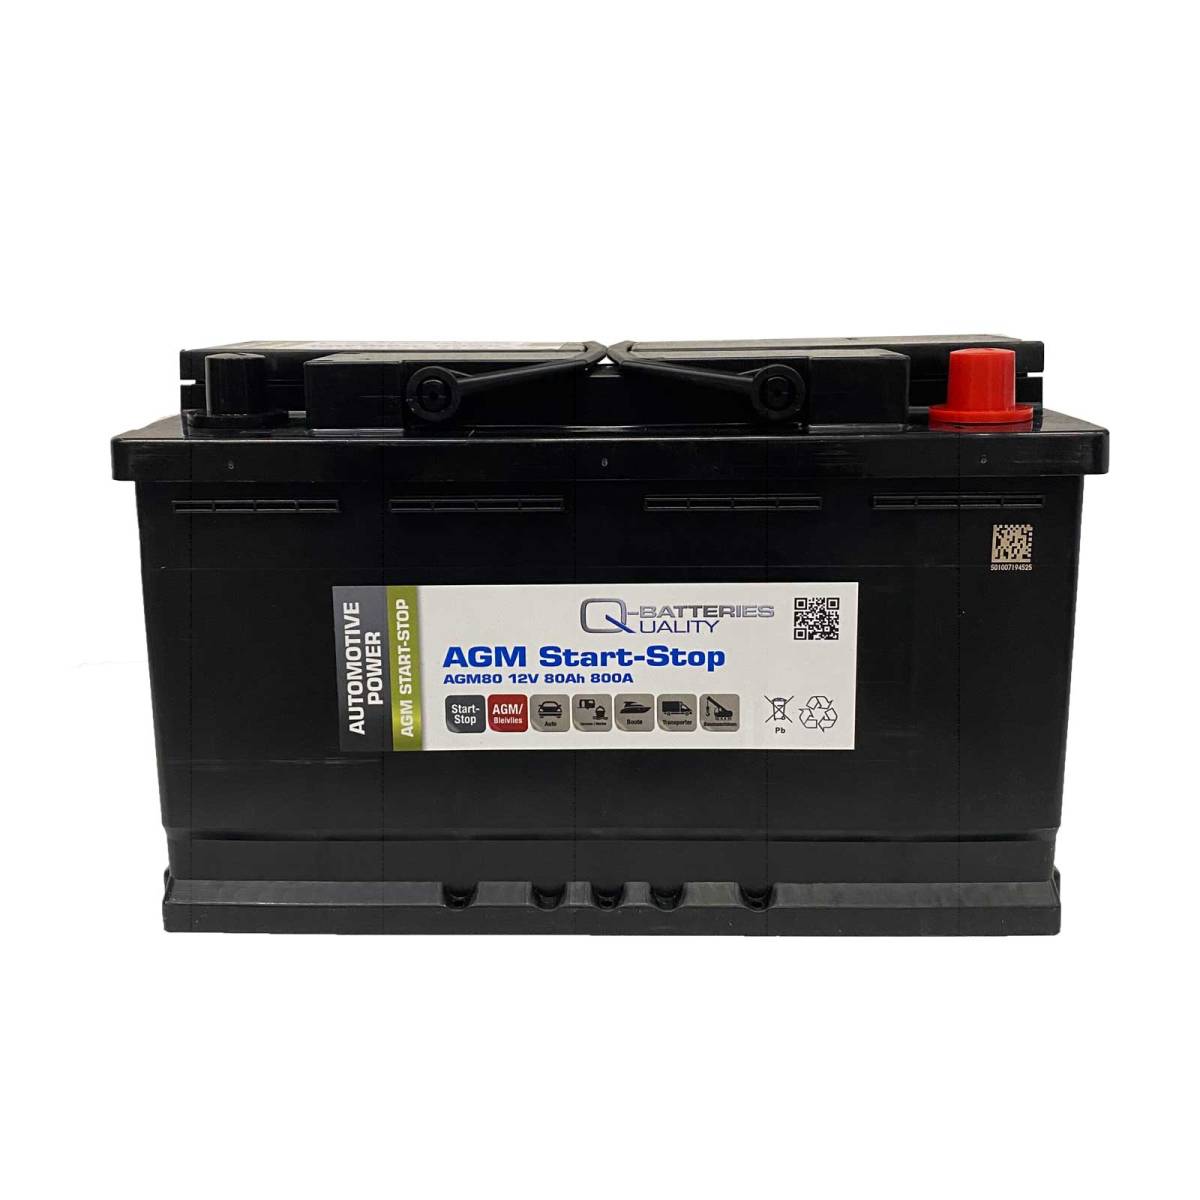 Q-Batteries Start-Stop Autobatterie AGM80 12V 80Ah 800A